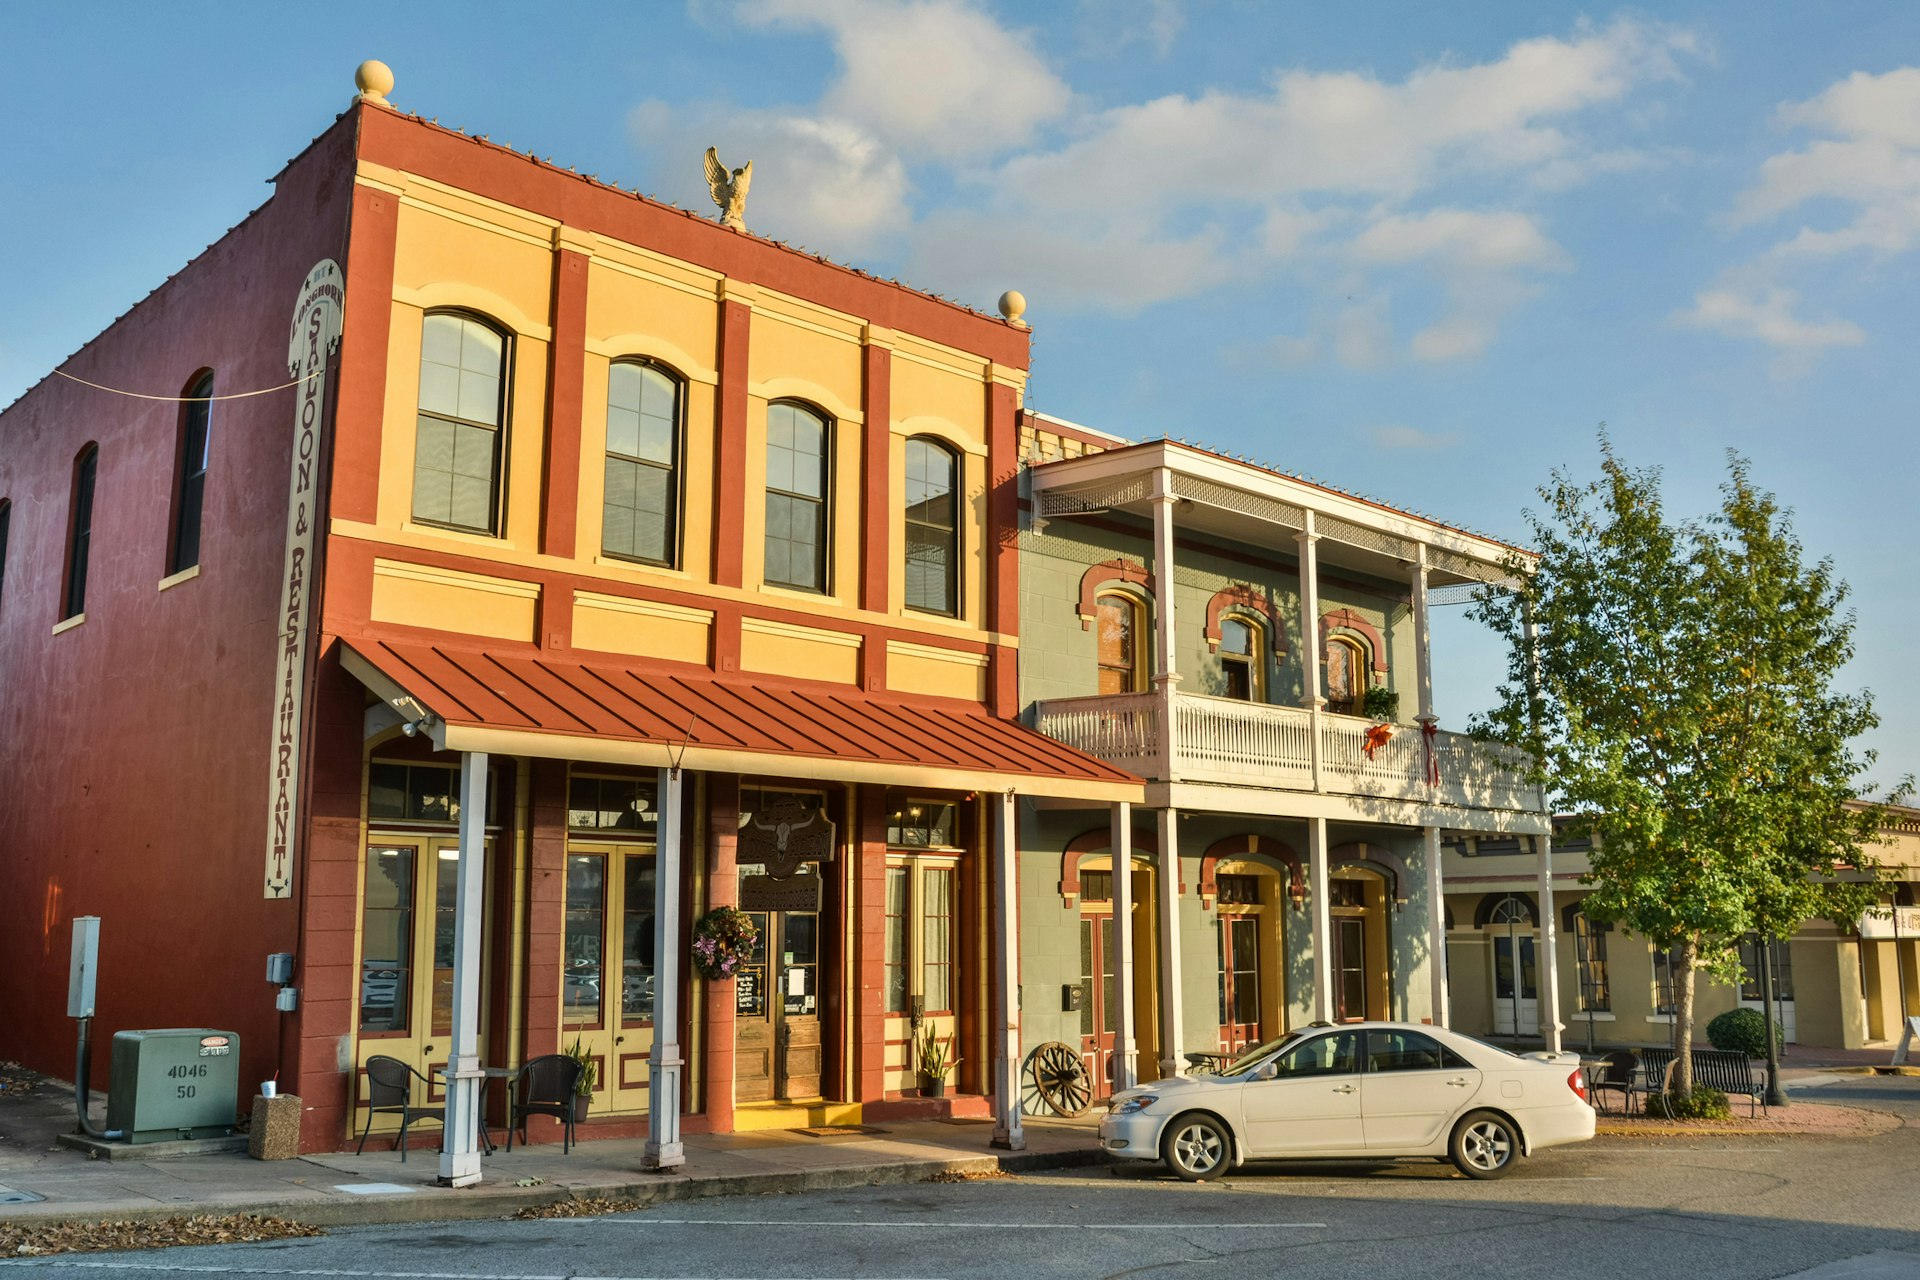 Dunlap Buildings, dating from 1870, in Brenham, TX